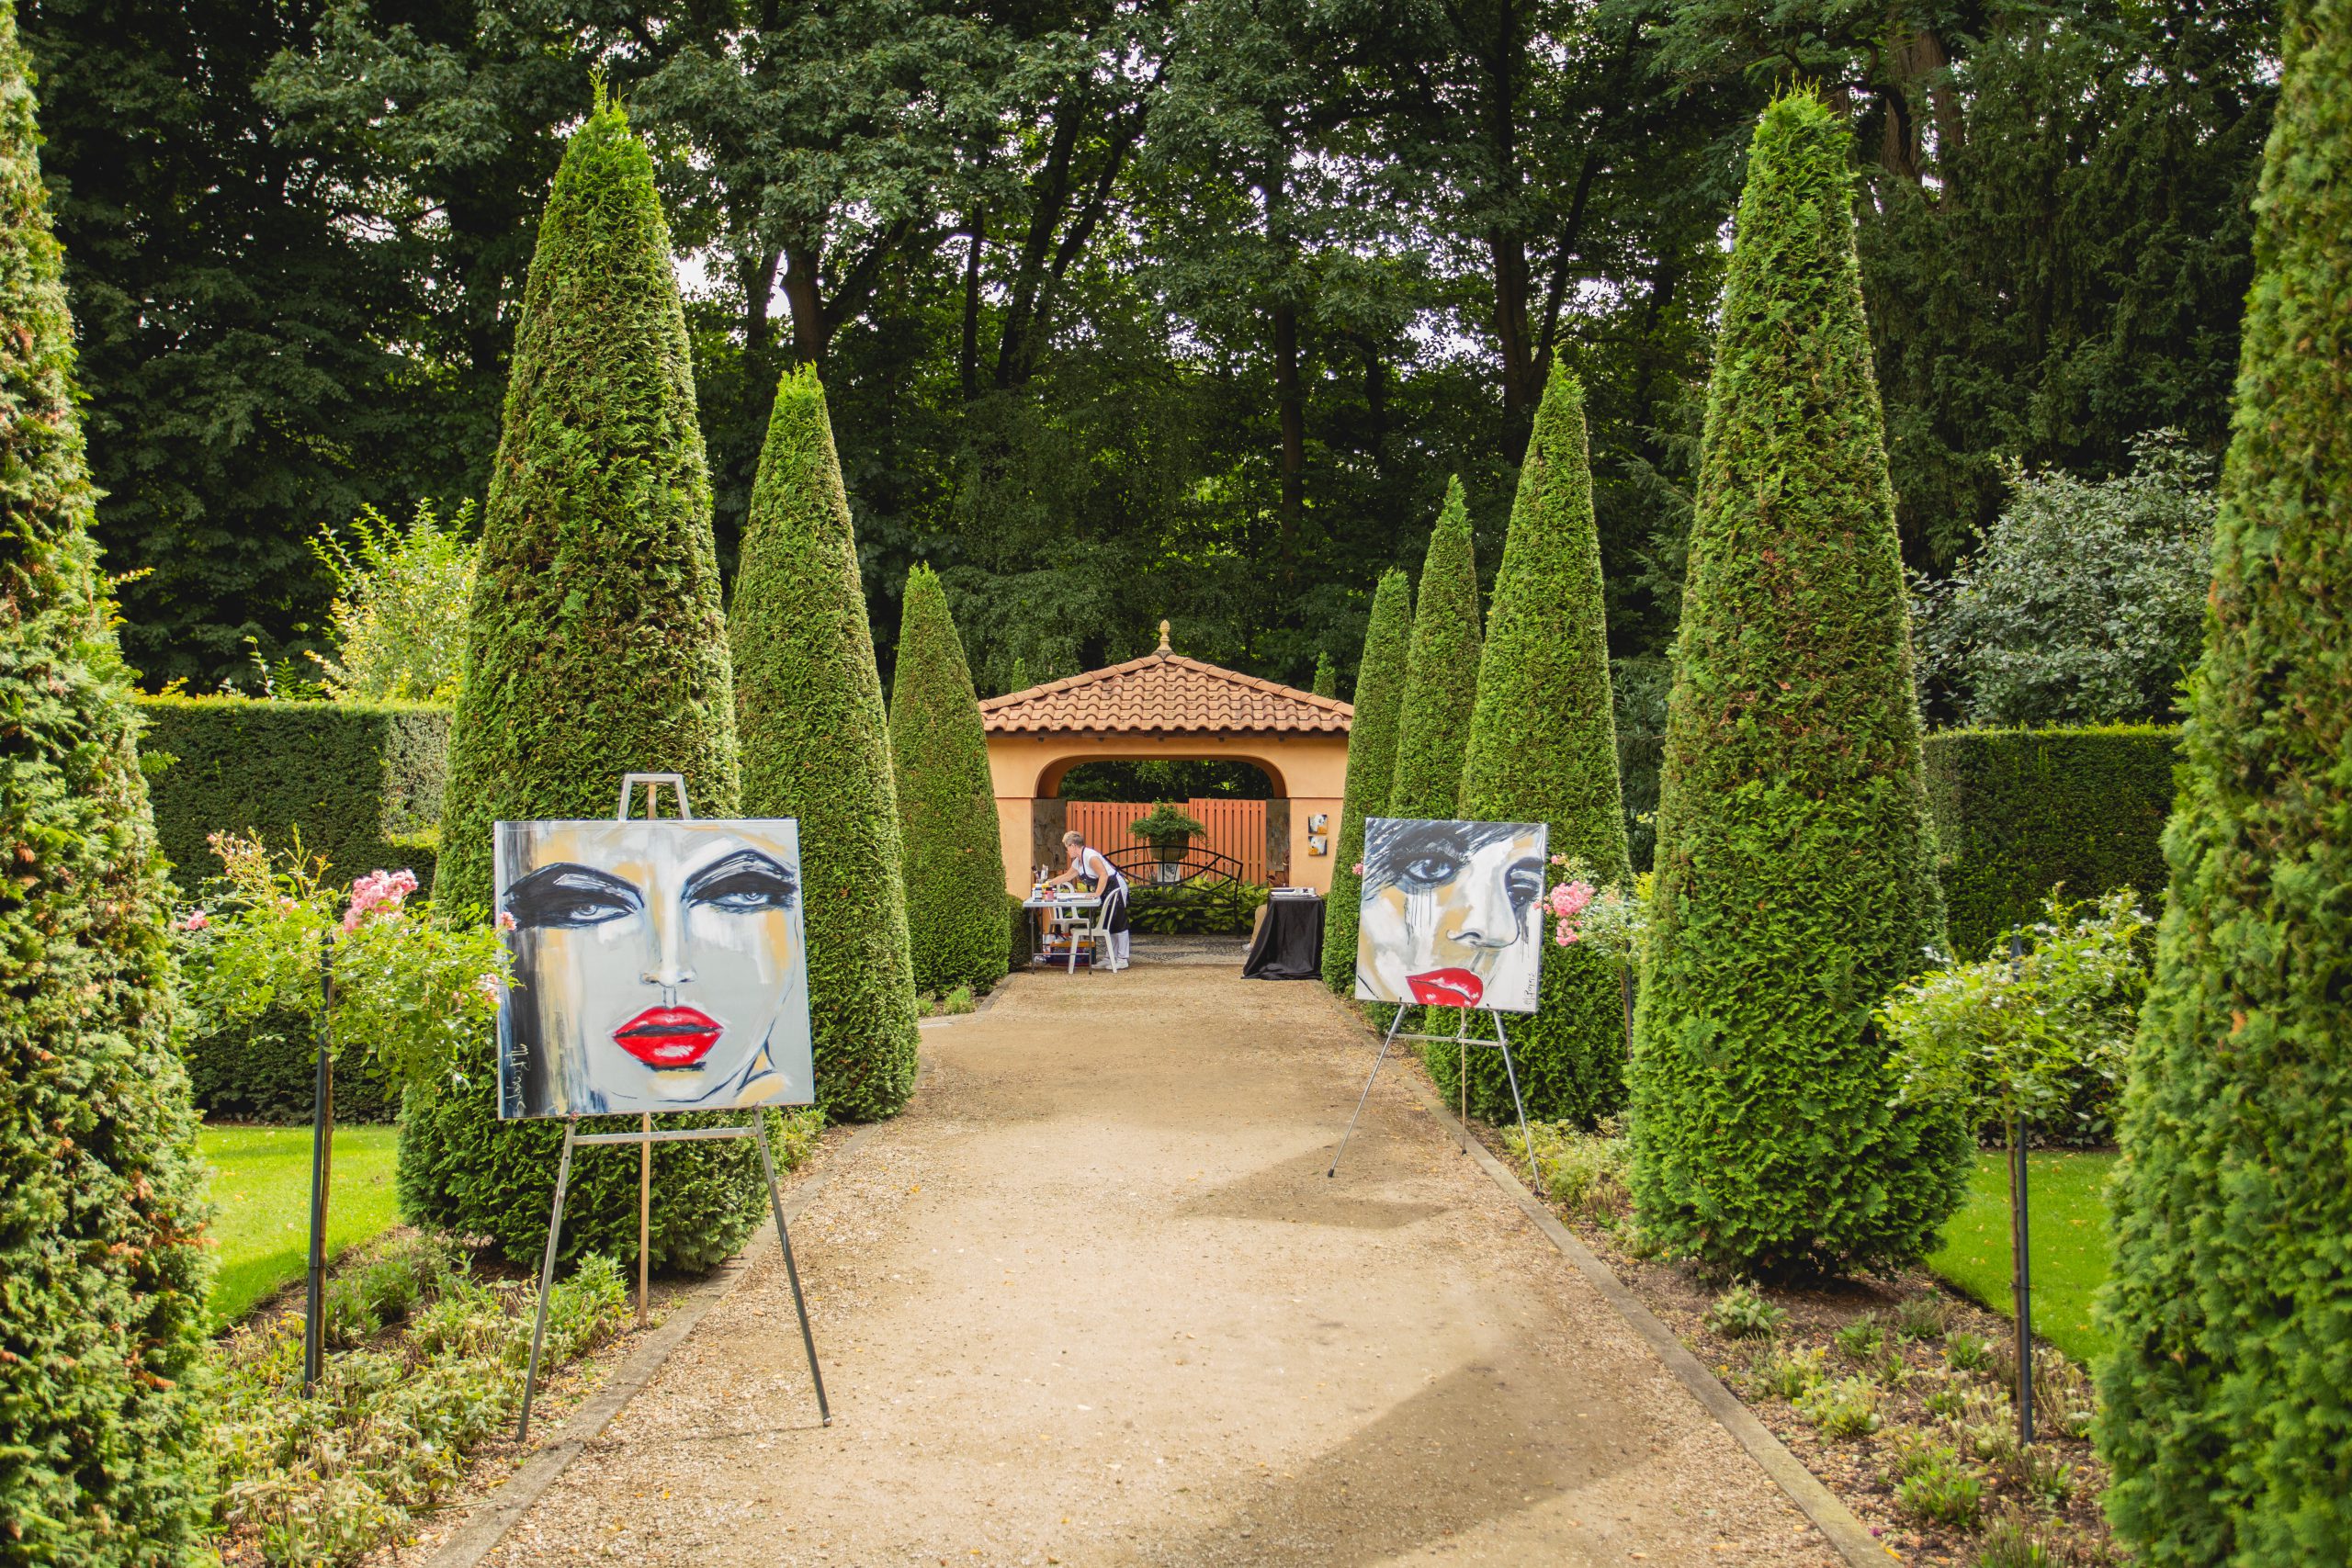 Am Kunstwochenende arbeiten über 30 Künstler live in den Gärten